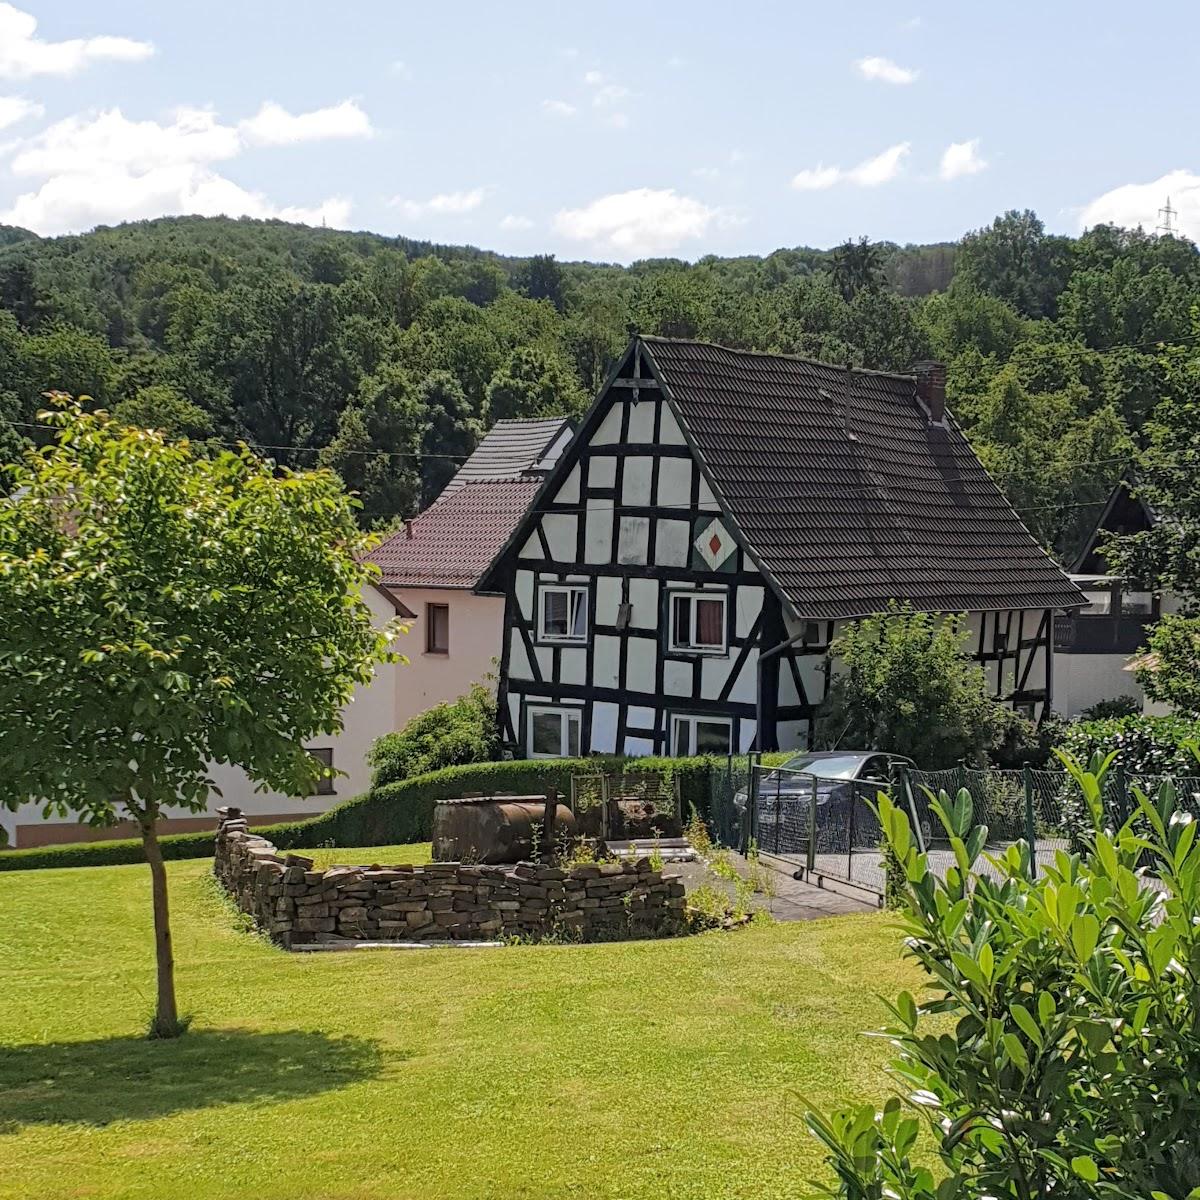 Restaurant "Hotel Haus Friedental" in Windeck